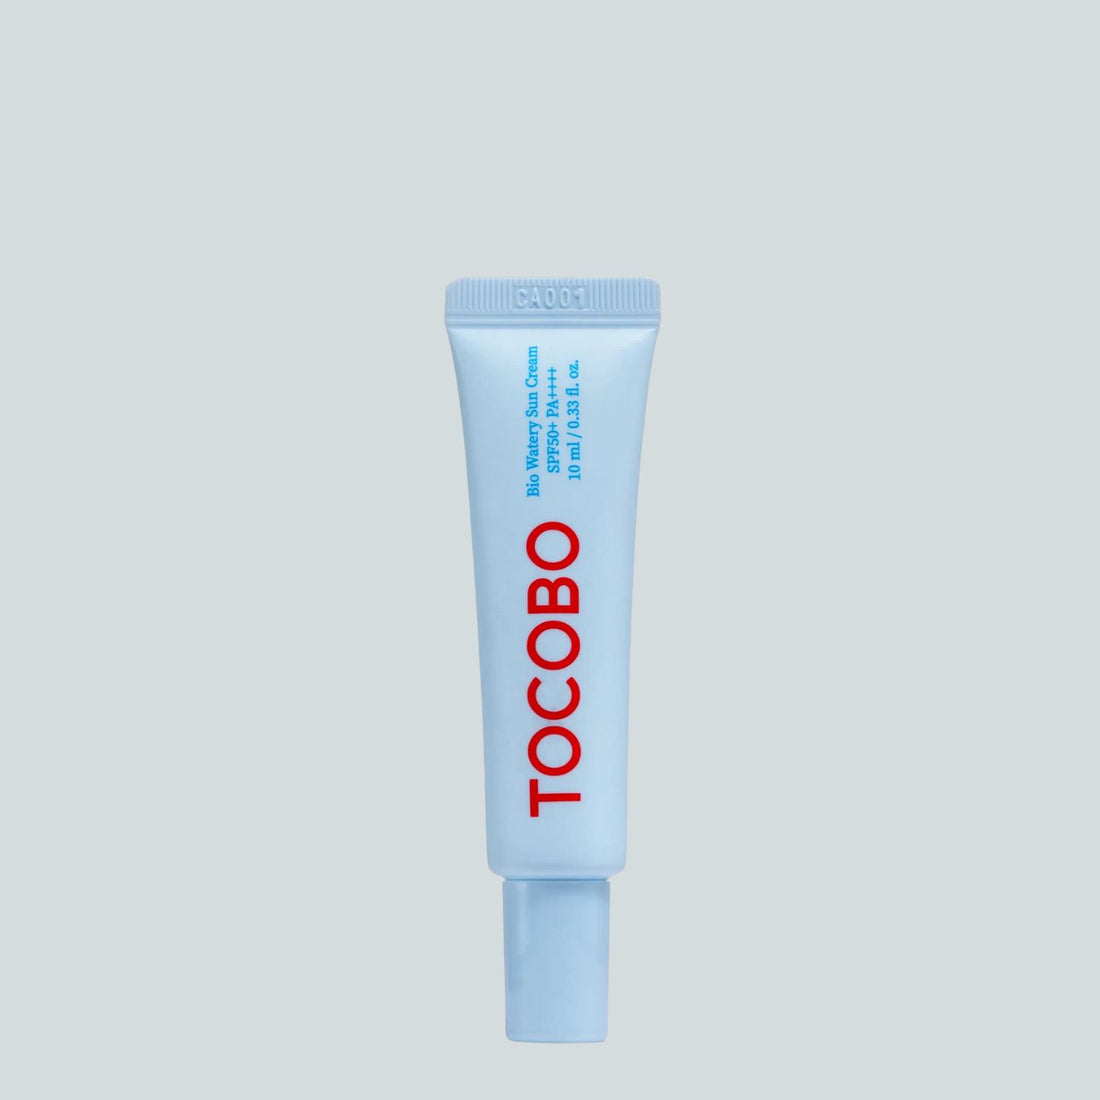 TOCOBO Bio Watery Sun Cream Deluxe SPF50+ PA++++ 10ml Skin Care TOCOBO ORION XO Sri Lanka